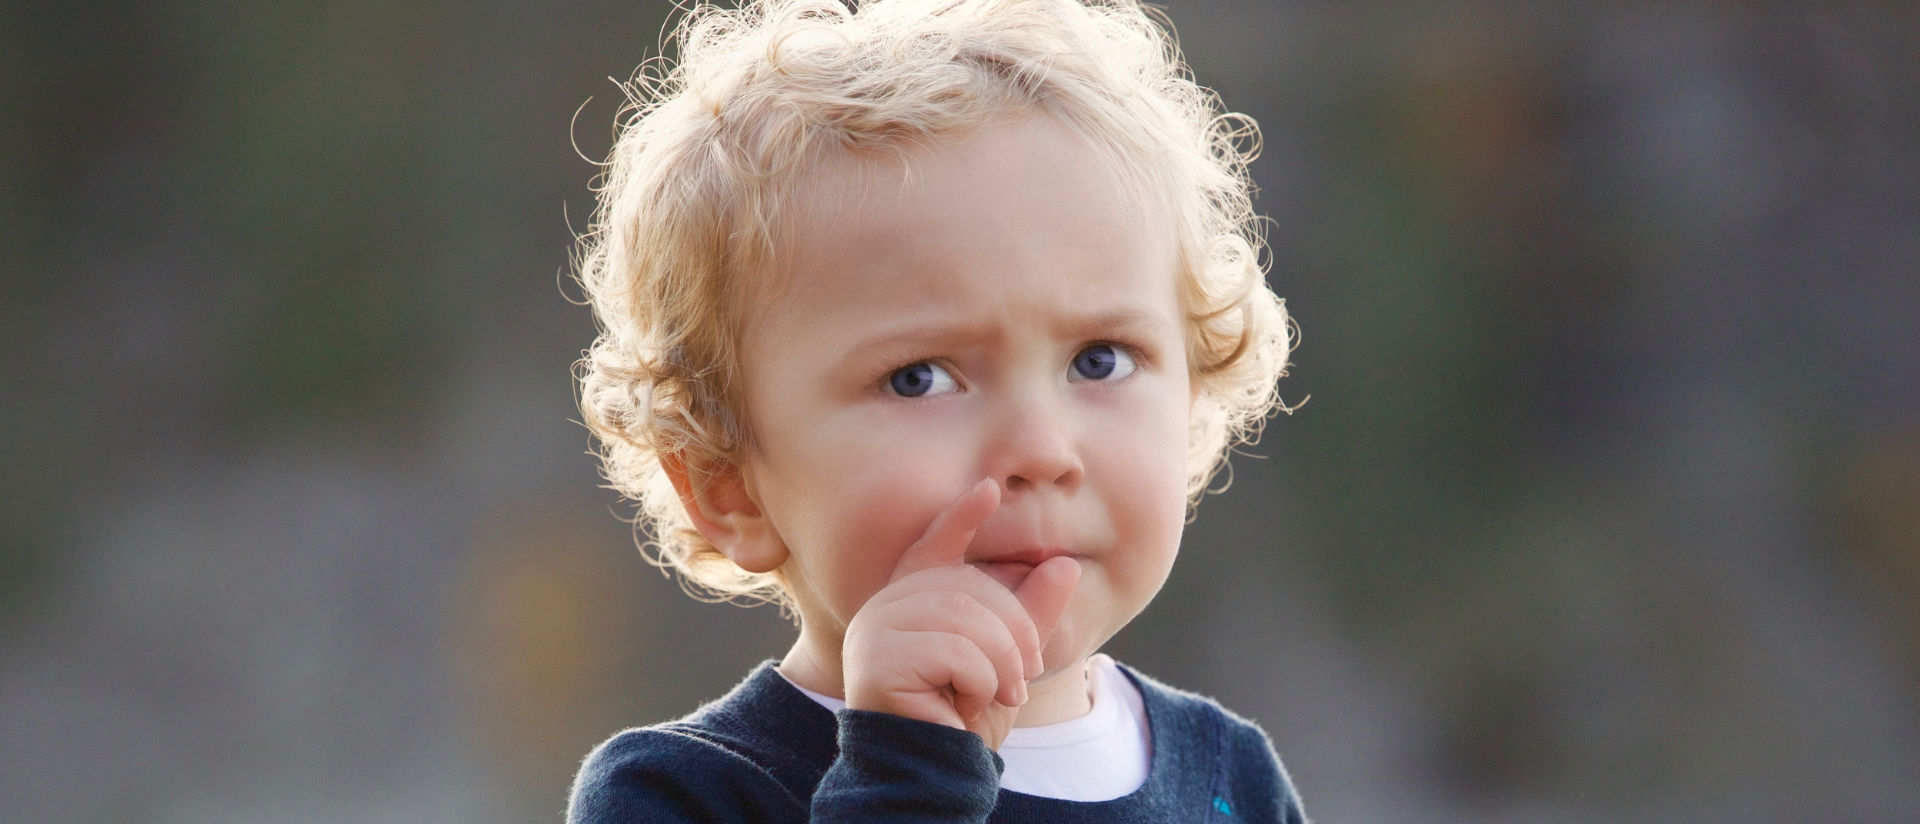 Das Bild zeigt ein Kind beim Grübeln.